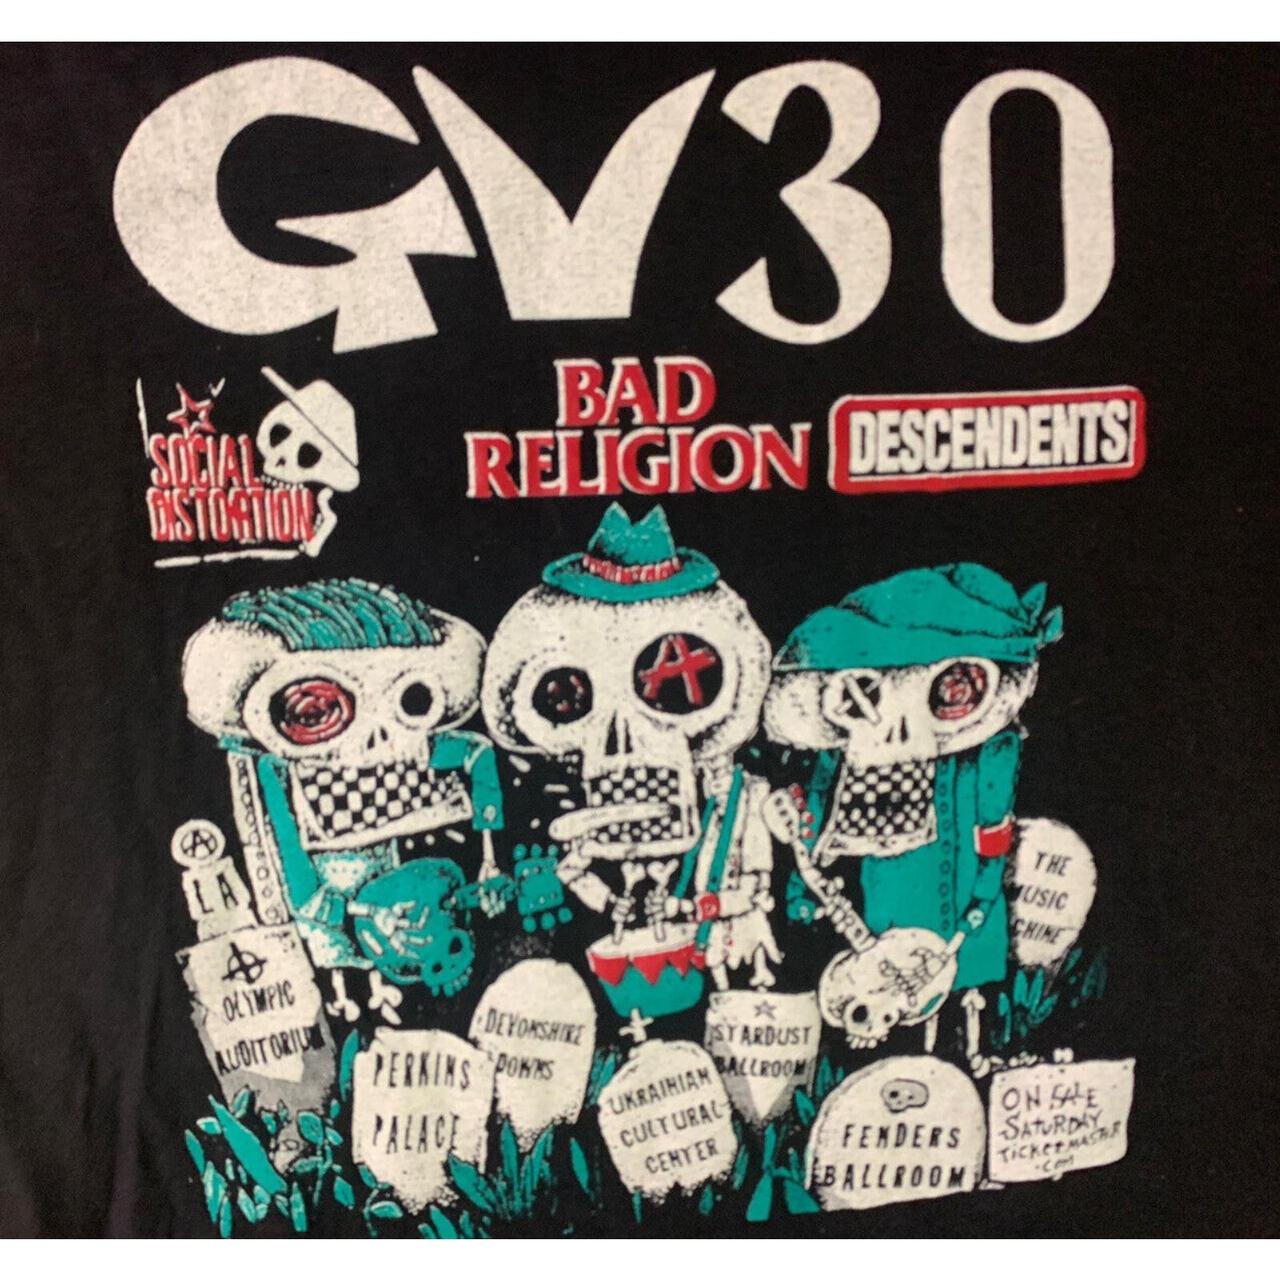 Gary Tovar Social Distortion Bad Religion GV30 2011... - Depop